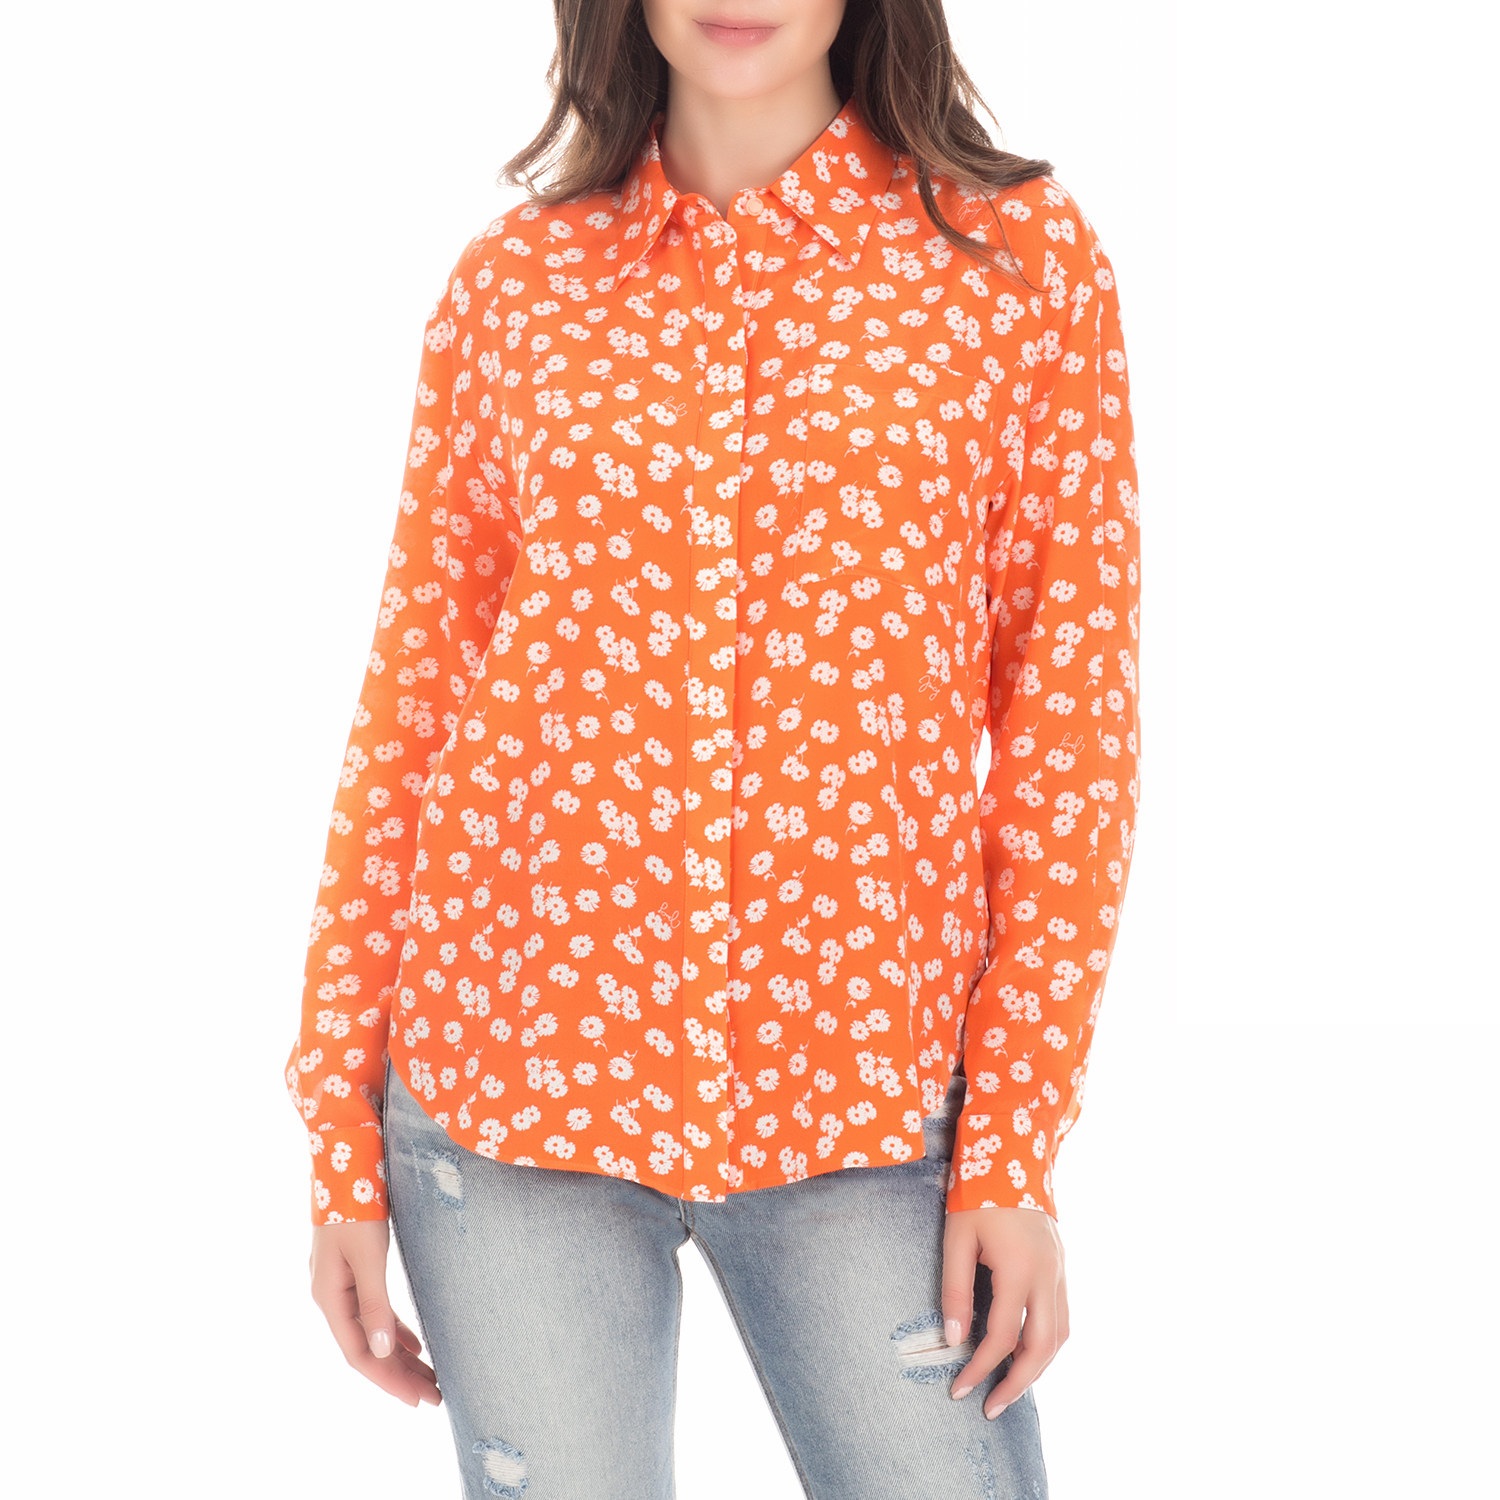 Γυναικεία/Ρούχα/Πουκάμισα/Μακρυμάνικα JUICY COUTURE - Γυναικείο μακρυμάνικο πουκάμισο DITSY DAISY SILK πορτοκαλί